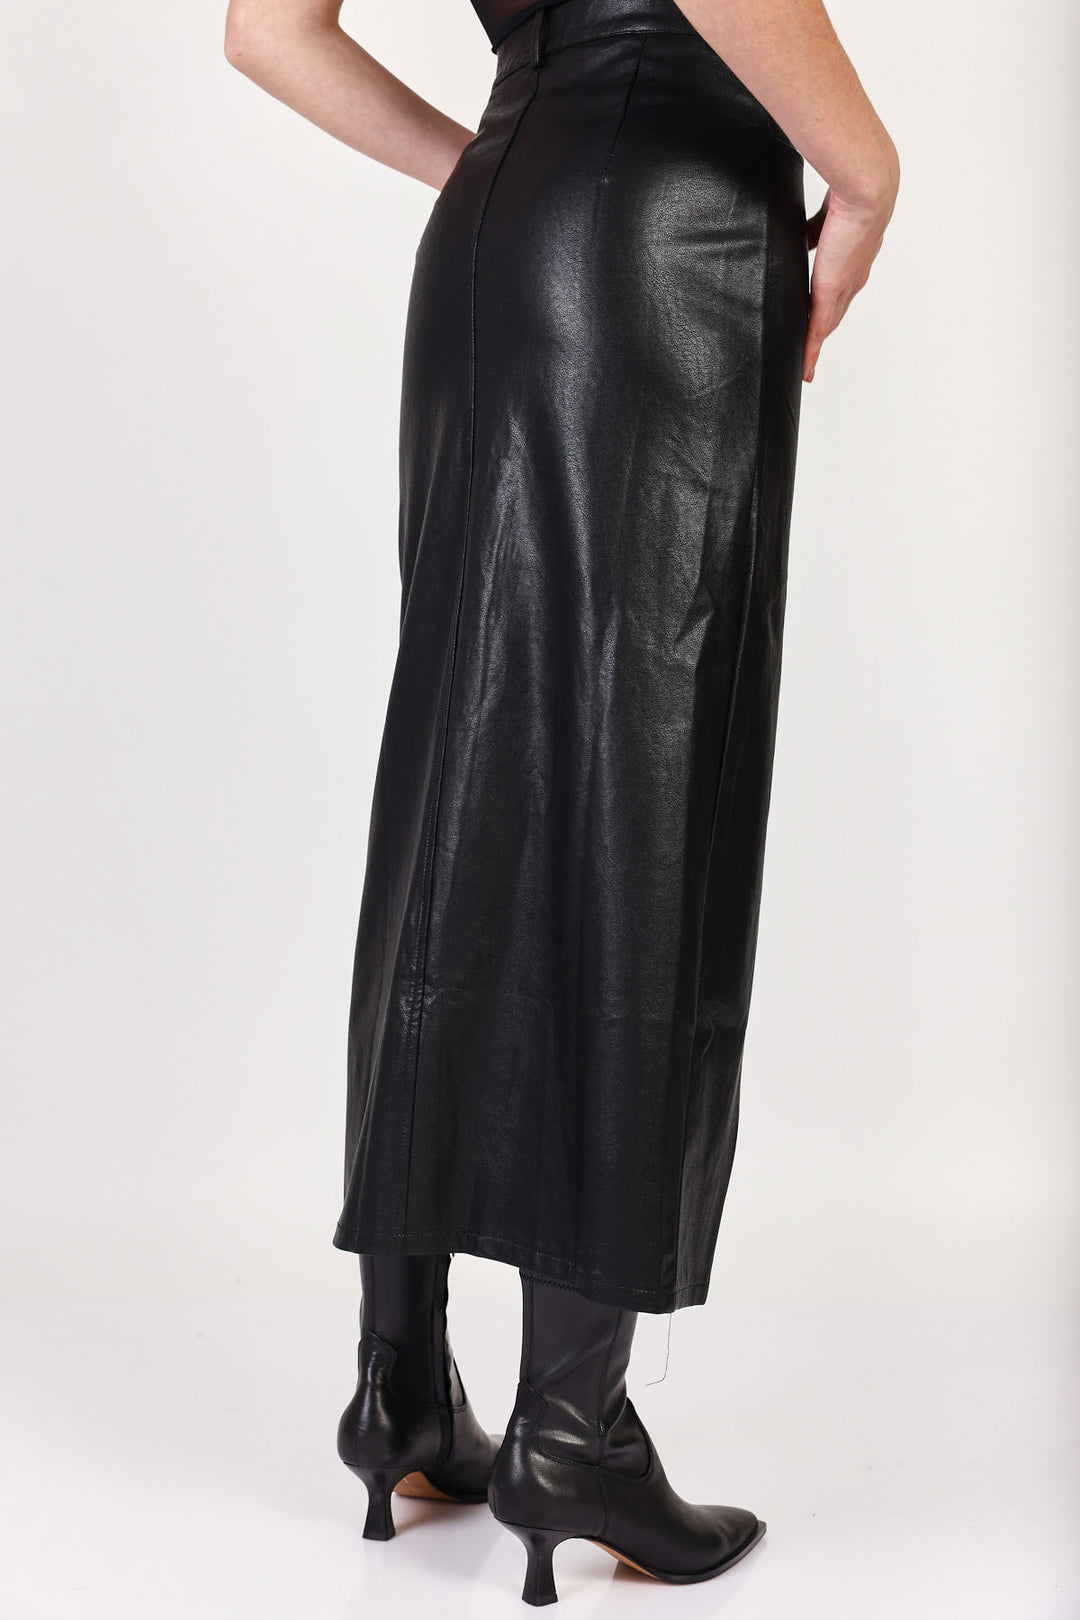 חצאית דמוי עור Camille בצבע שחור